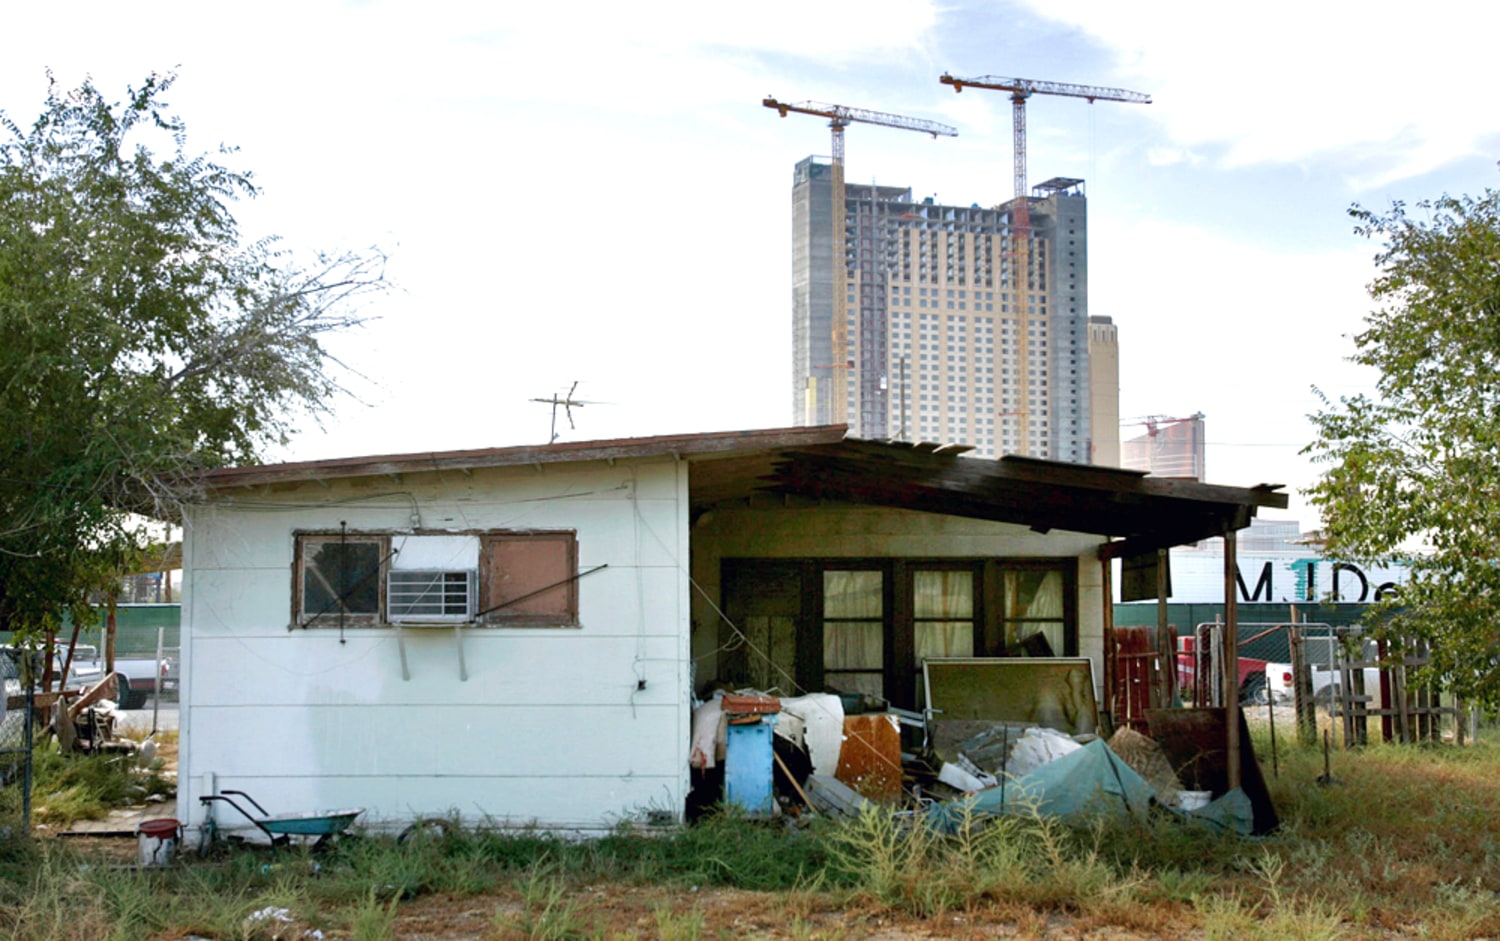 Naked City neighborhood in Las Vegas poised for redevelopment boom, Housing